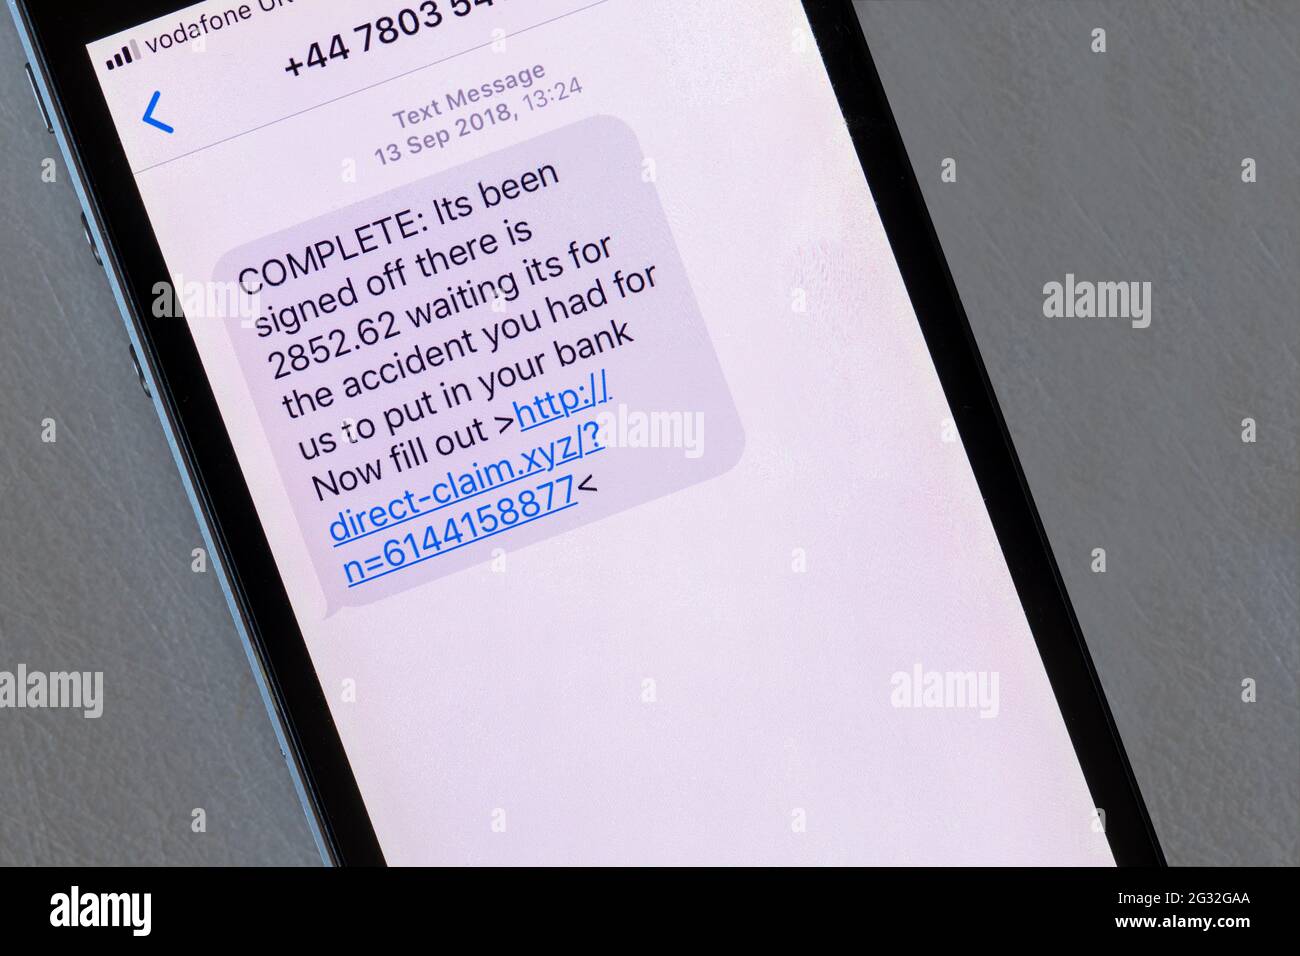 Un mensaje de estafa mostrado en un iphone que pretende ser sobre el pago de una reclamación de seguro. Foto de stock